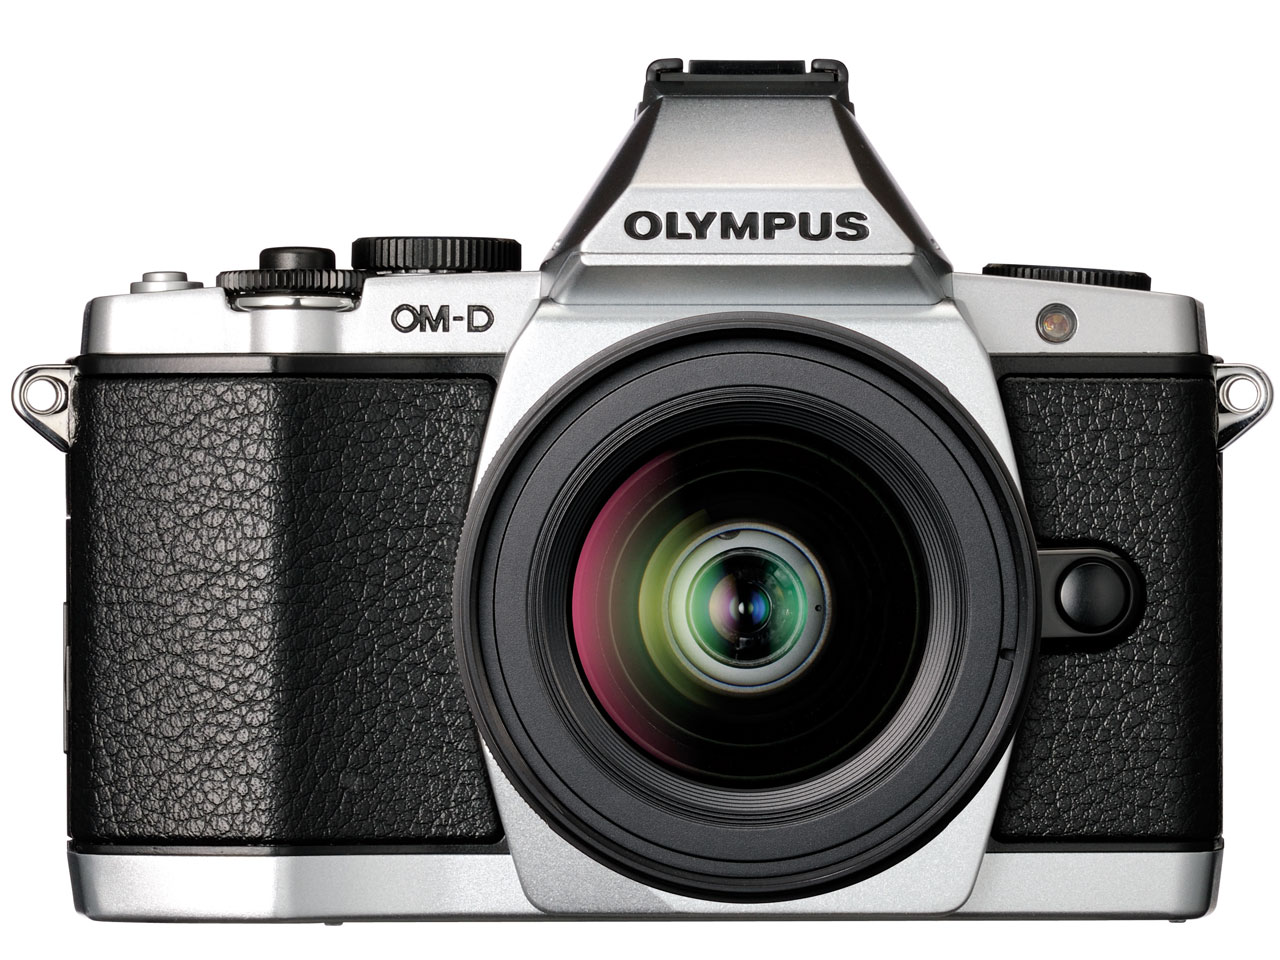 OLYMPUS OM-D E-M5 レンズキット [シルバー] の製品画像